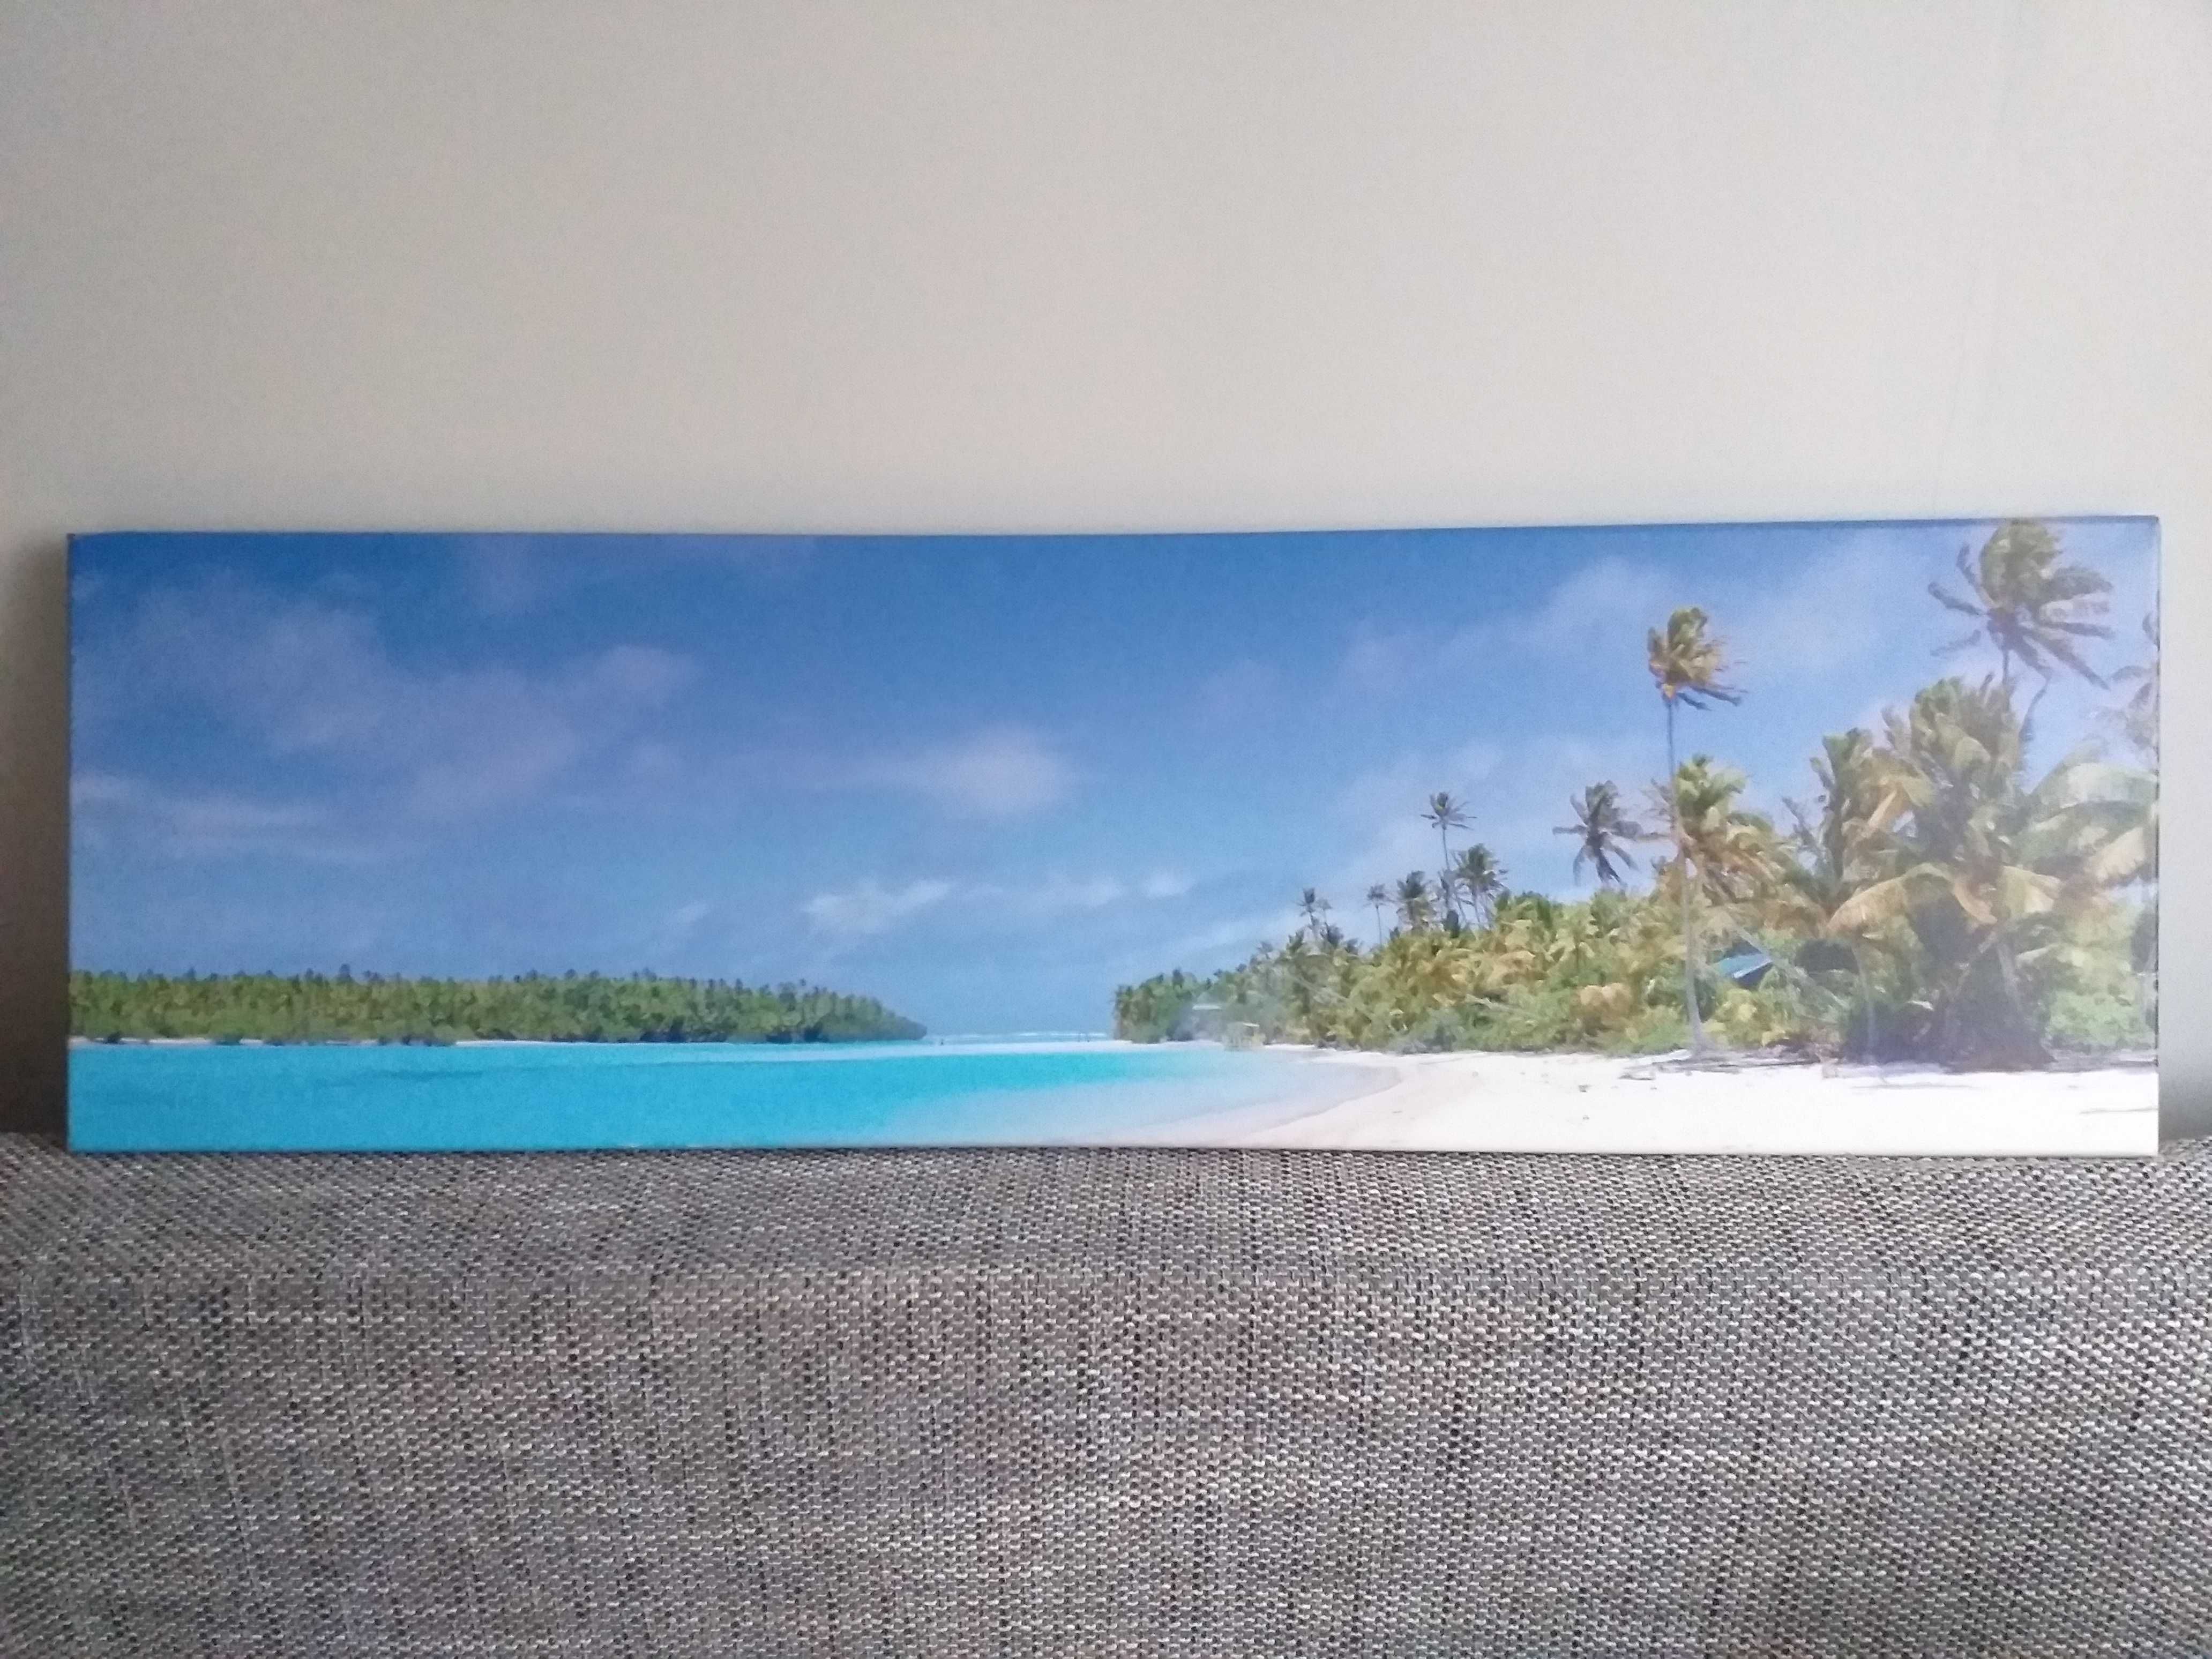 obraz na ścianę - panorama wybrzeża